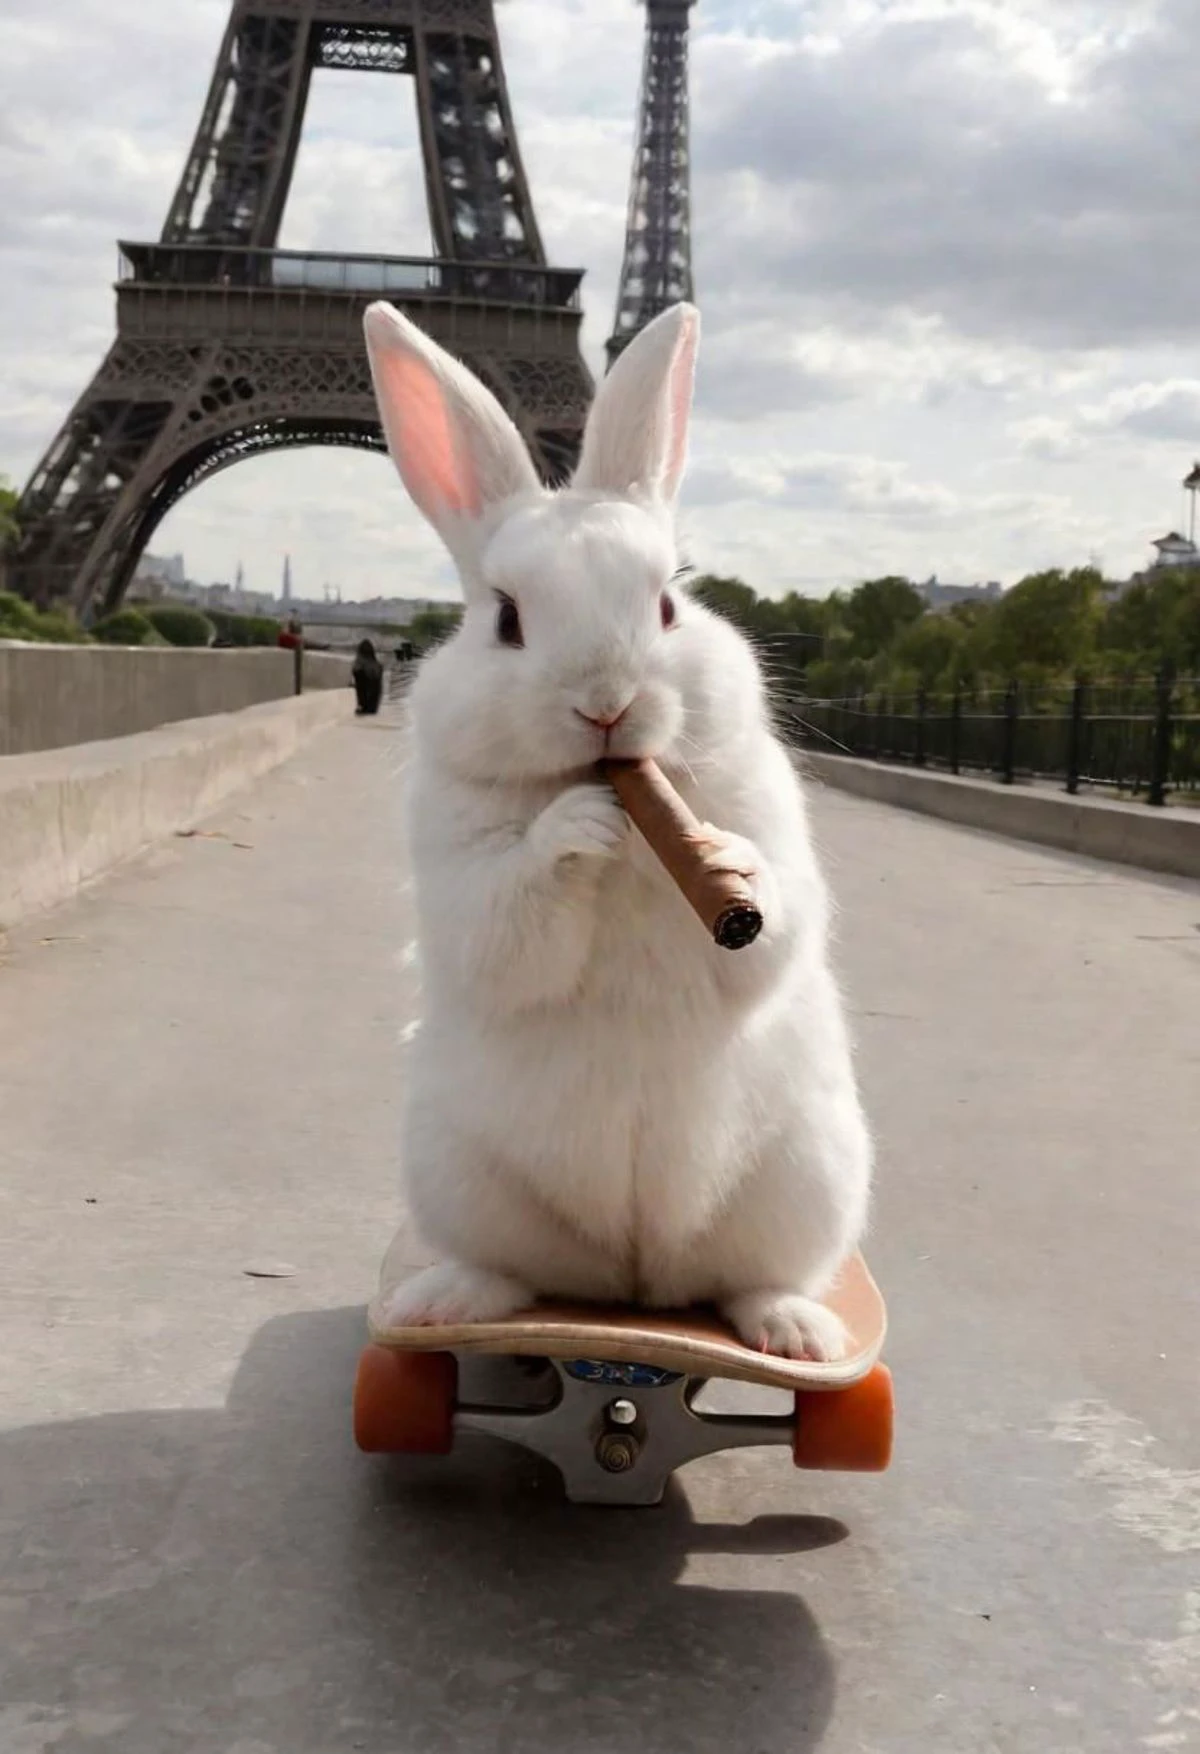 Foto de um coelhinho branco fumando um charuto, Em um skate, Torre Eiffel.